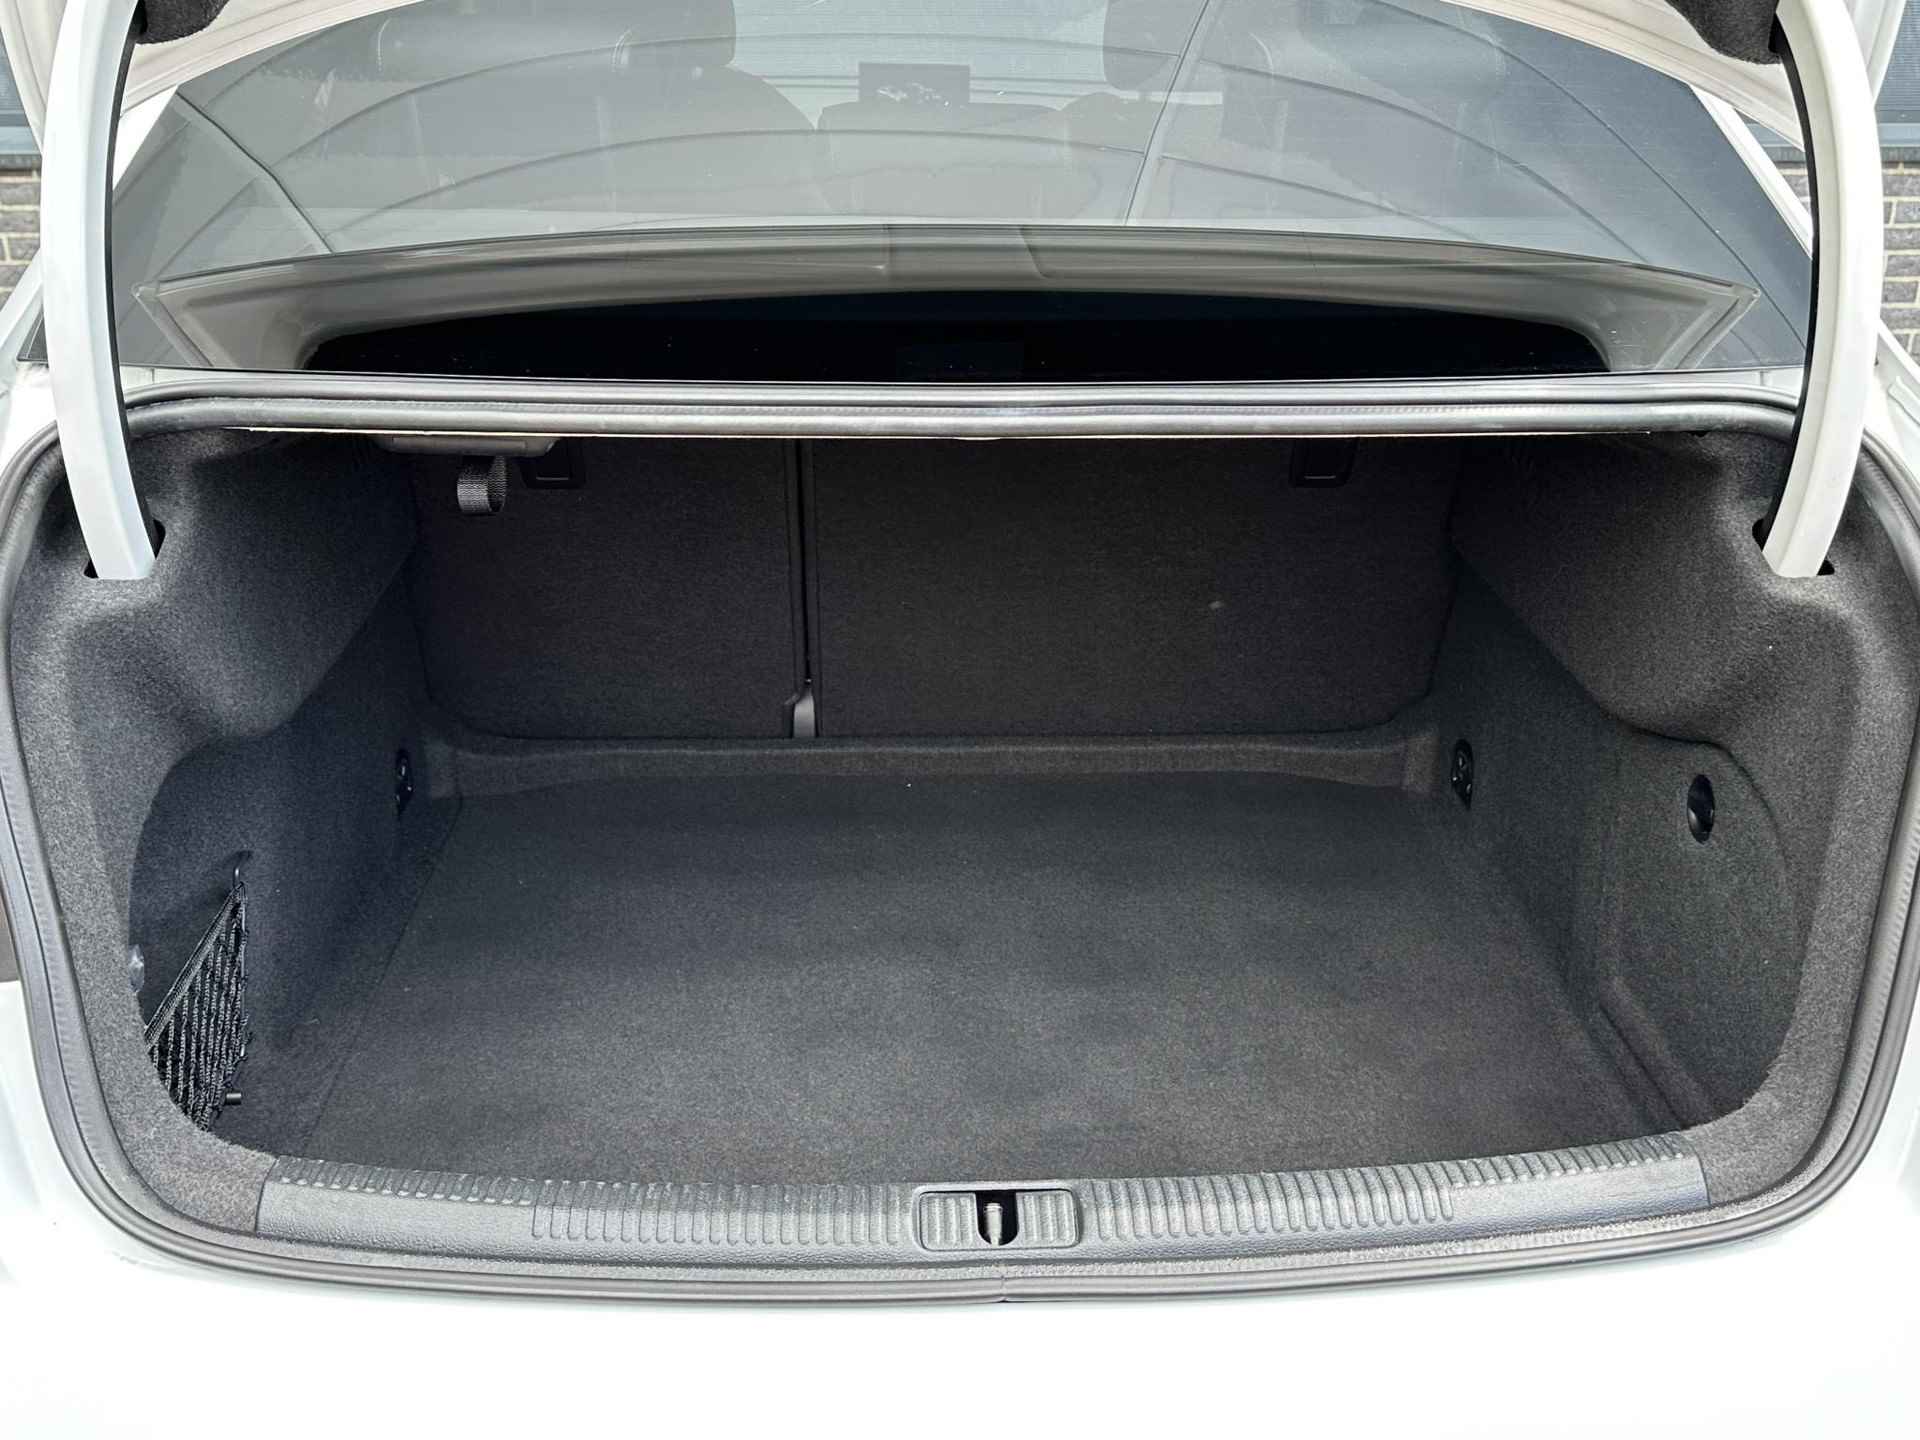 Audi A3 Limousine 1.0 TFSI Sport S Line Edition AUTOMAAT / Navigatie / 18inch LM velgen / LED koplampen / - 23/45